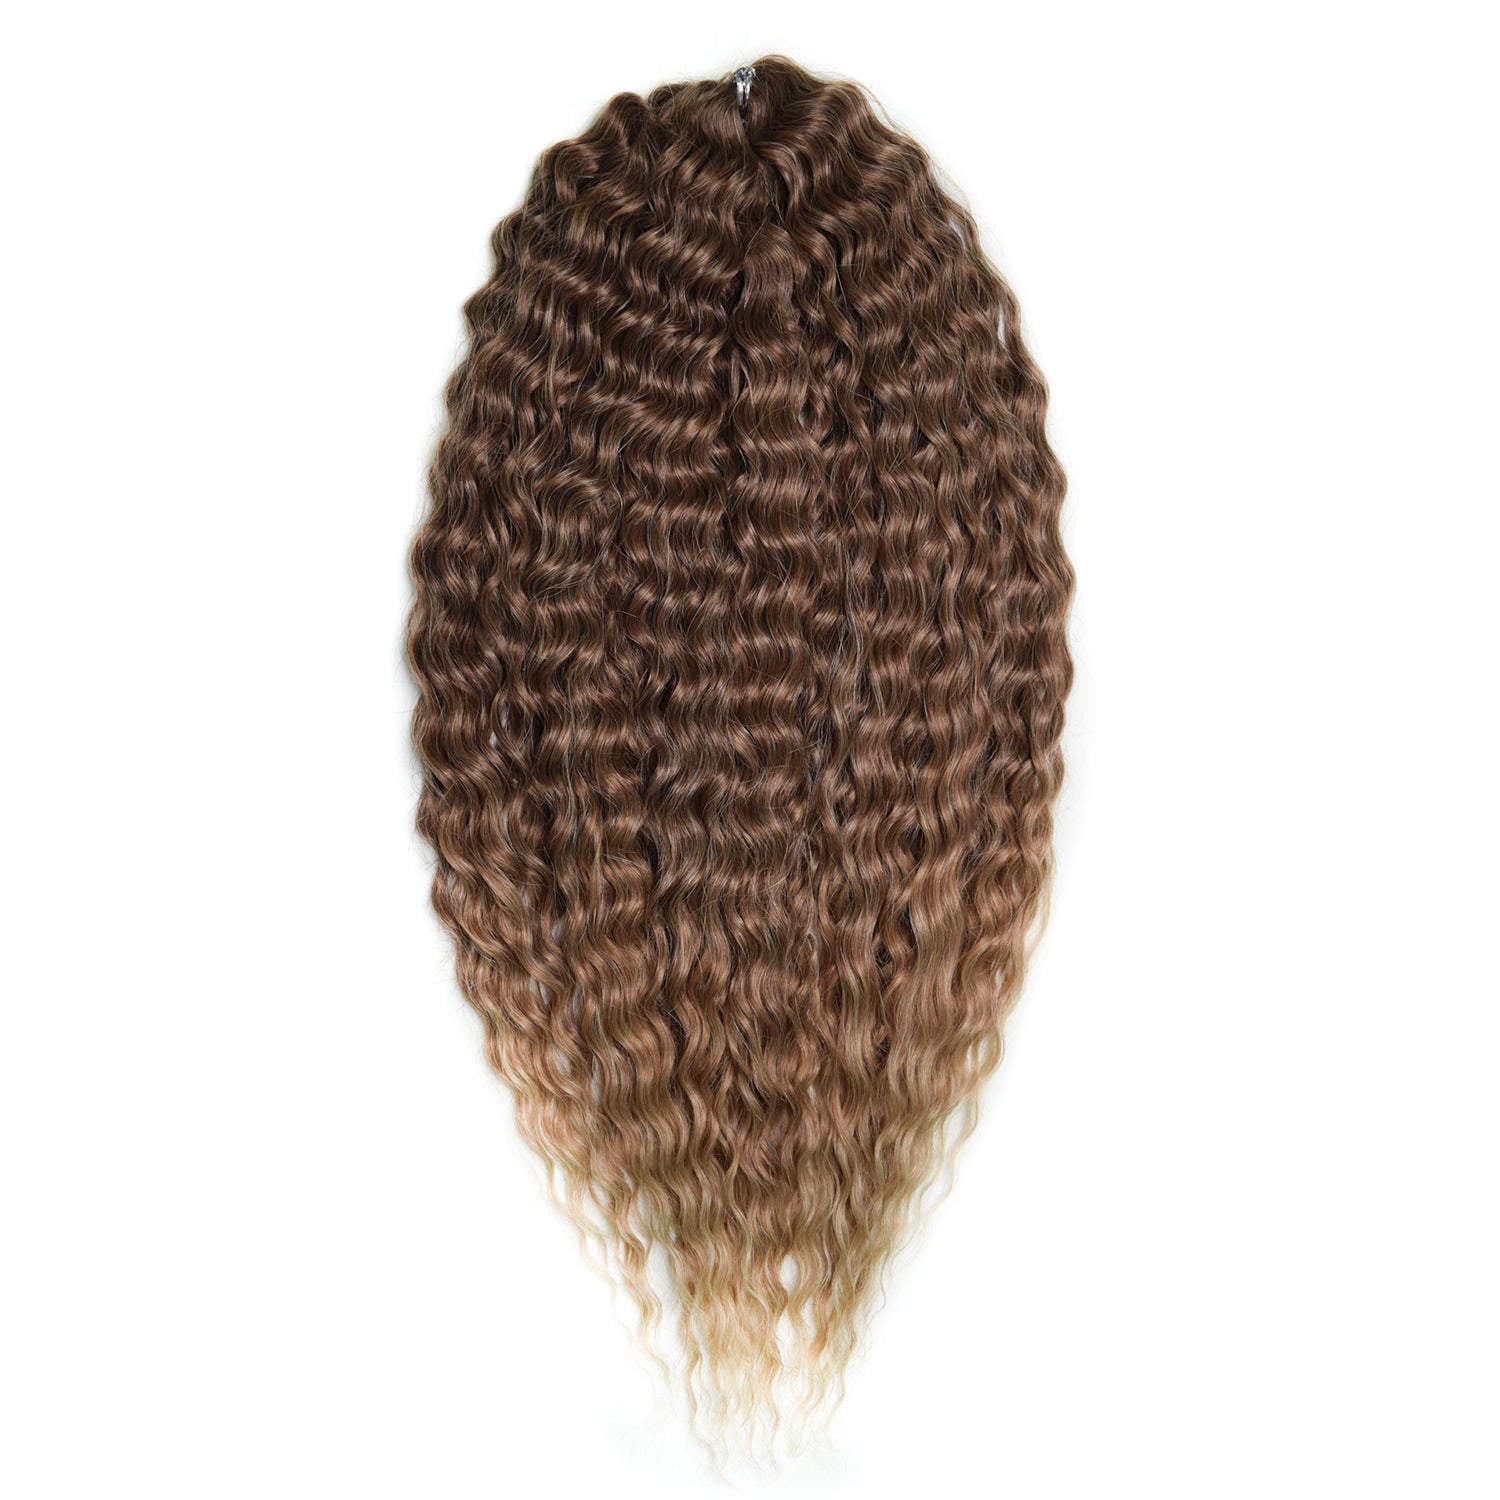 Афрокудри для плетения волос Ariel цвет 042 светлый-каштан длина 55см вес 300г афрокудри для плетения волос ariel ариэль fire оранжевый длина 66см вес 300г